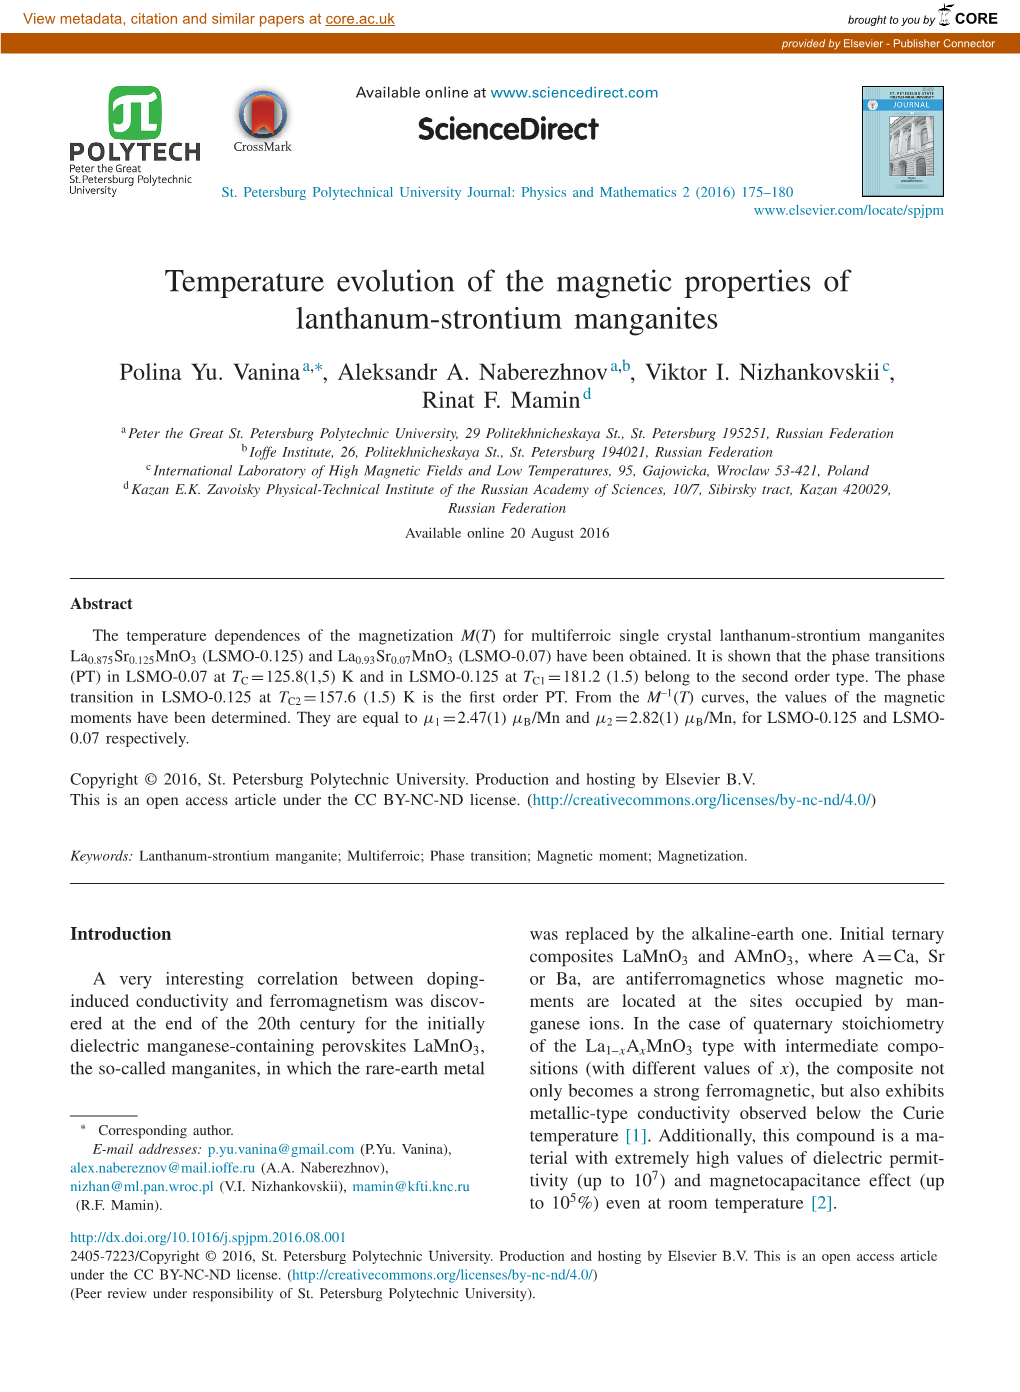 Temperature Evolution of the Magnetic Properties of Lanthanum-Strontium Manganites